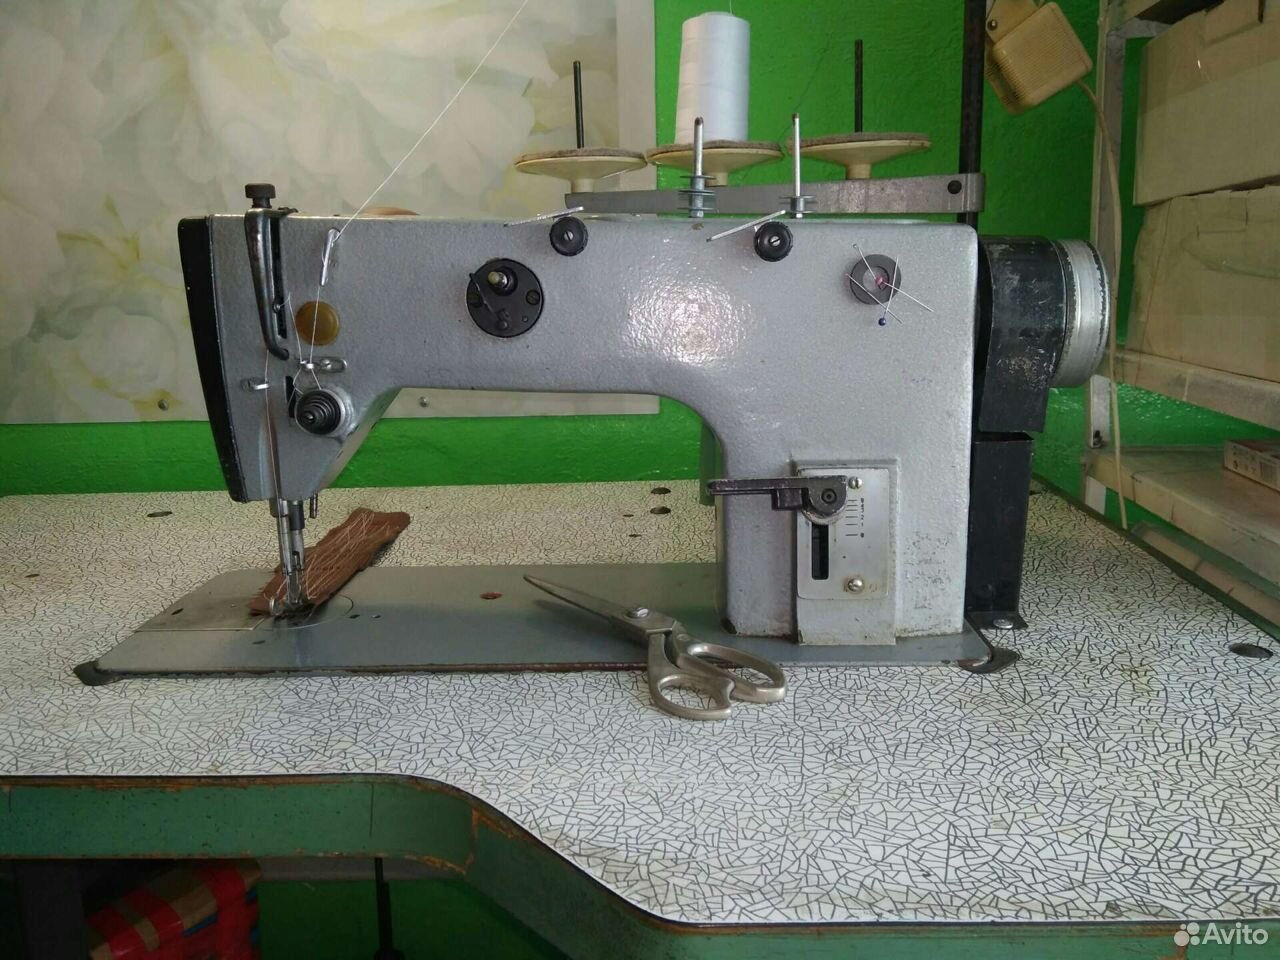 Промышленная швейная машина 1022м. Машина 1022-м класса выпускается Оршанским заводом «Легмаш».. Швейная машина 1022м характеристика. Смазка машины 1022-м кл. Швейная машинка 1022